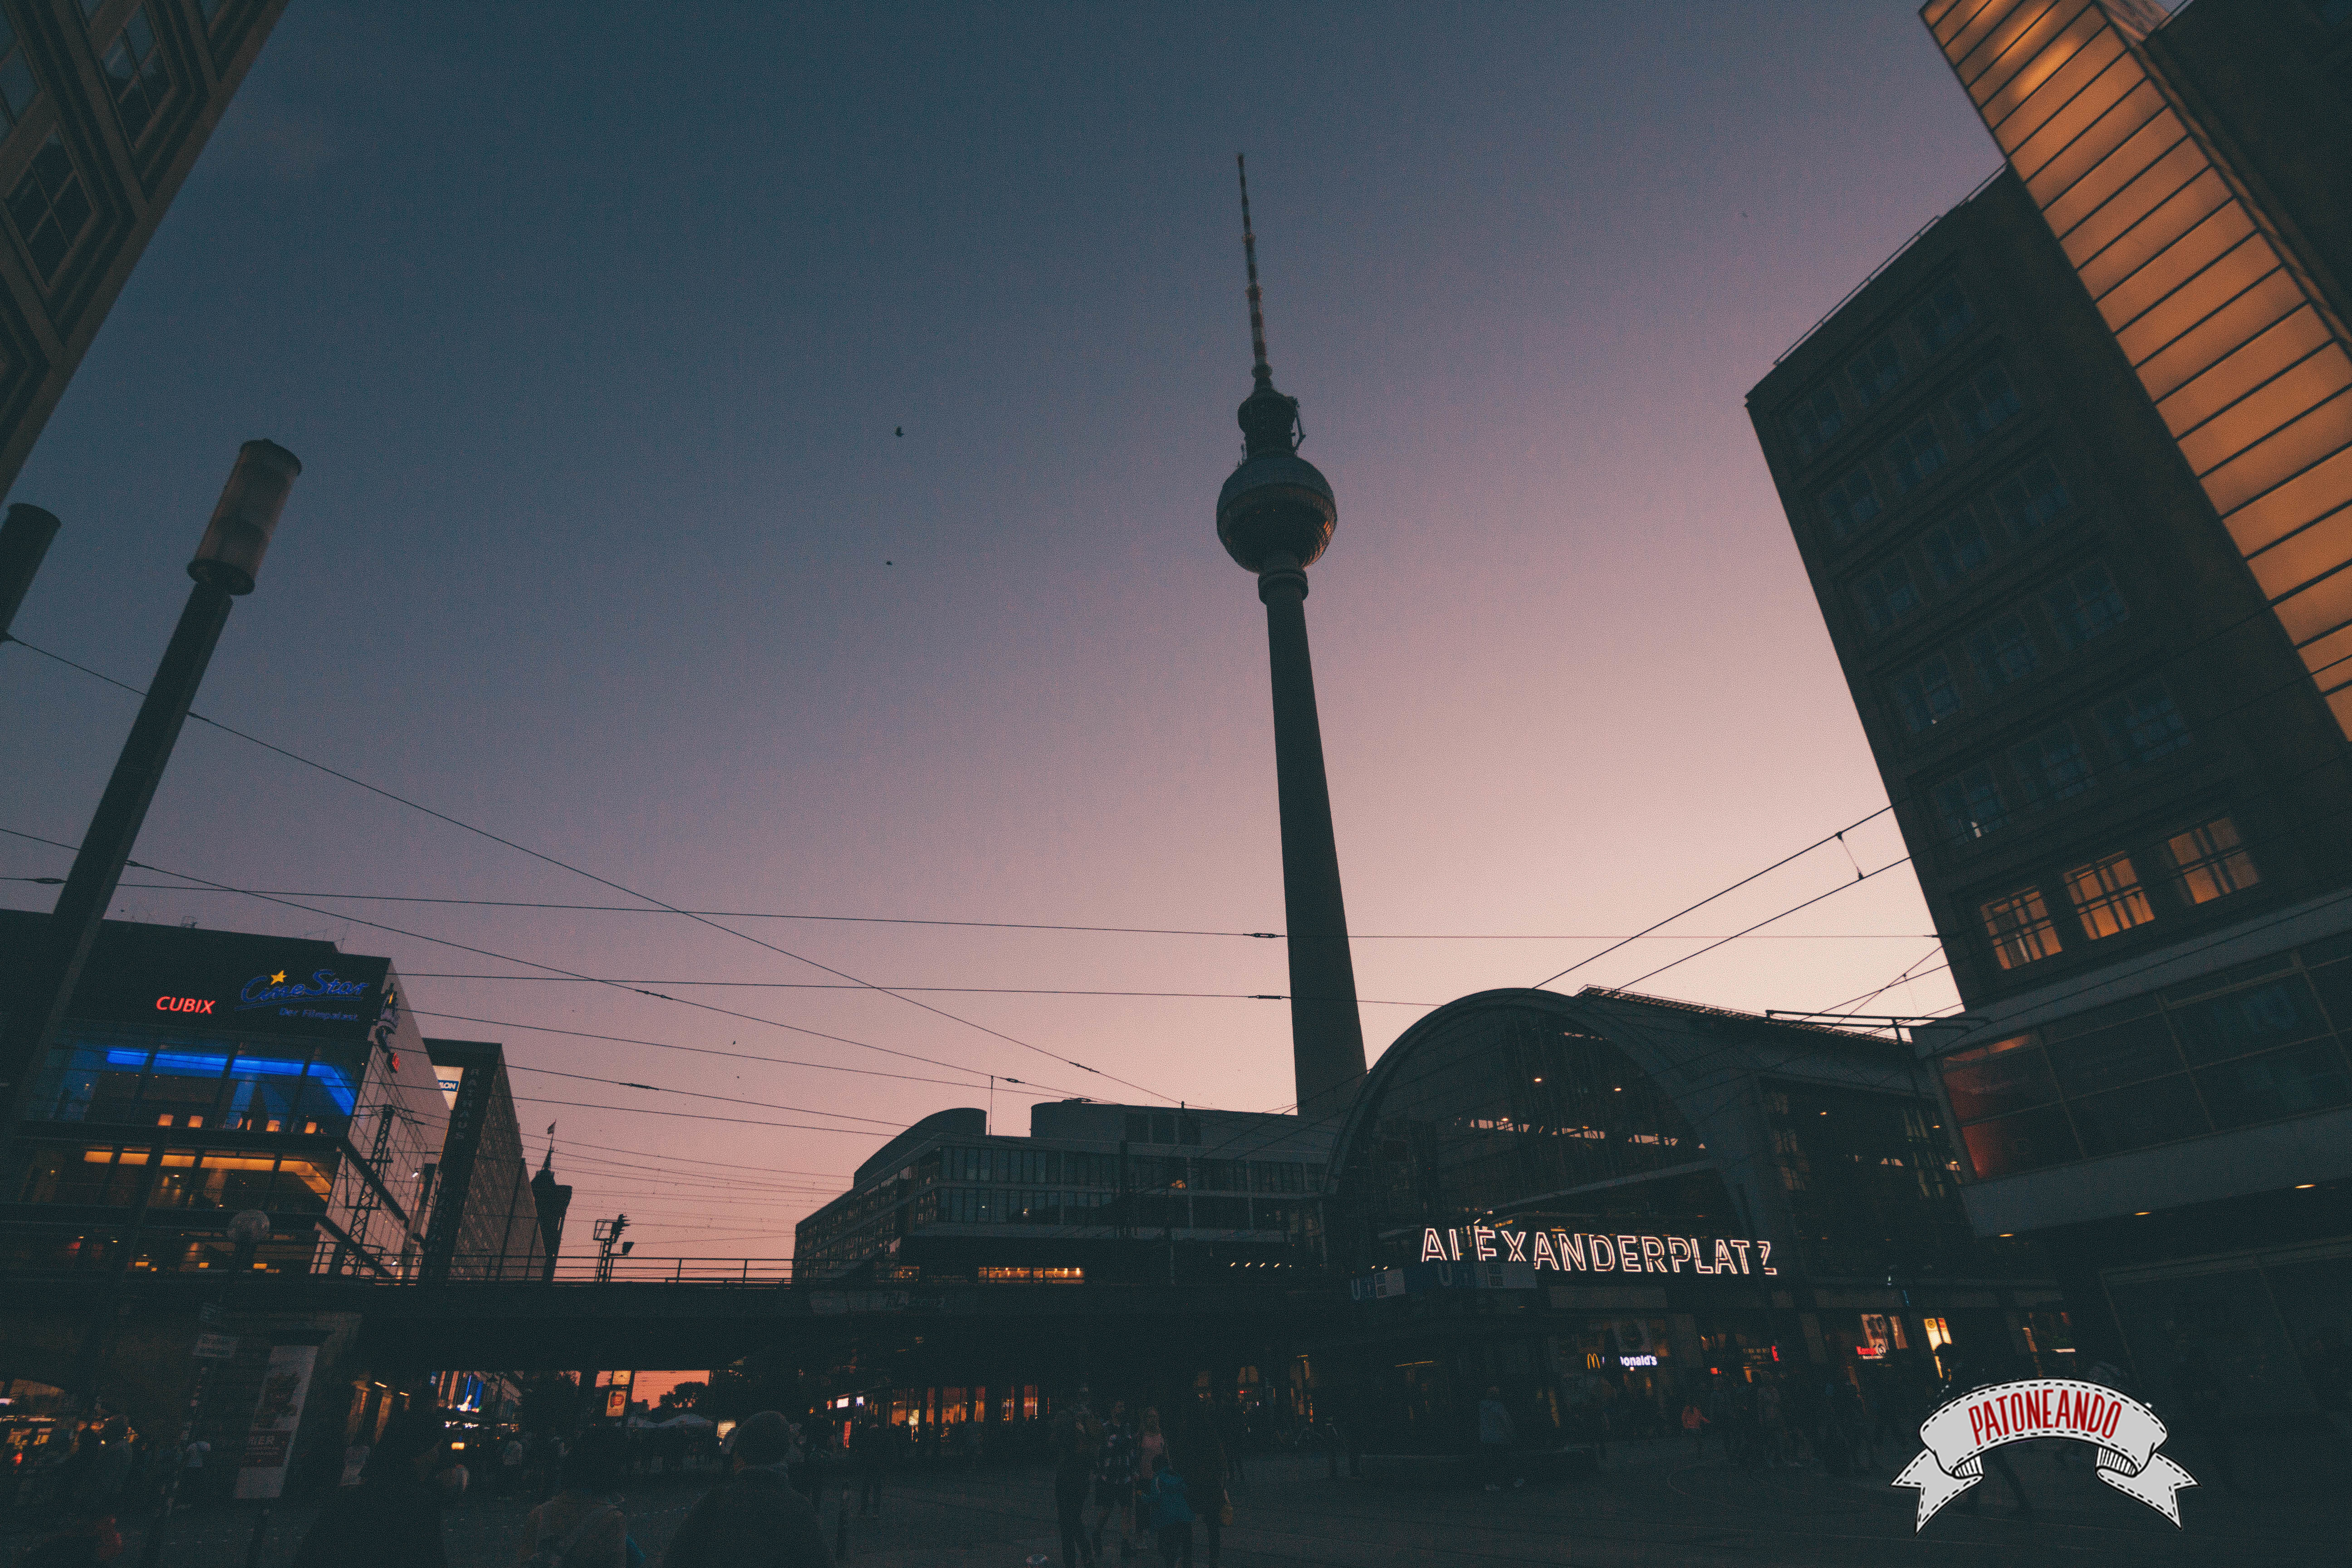 que ver y que hacer en Berlín - Alexander Platz - Patoneando blog de viajes (5)